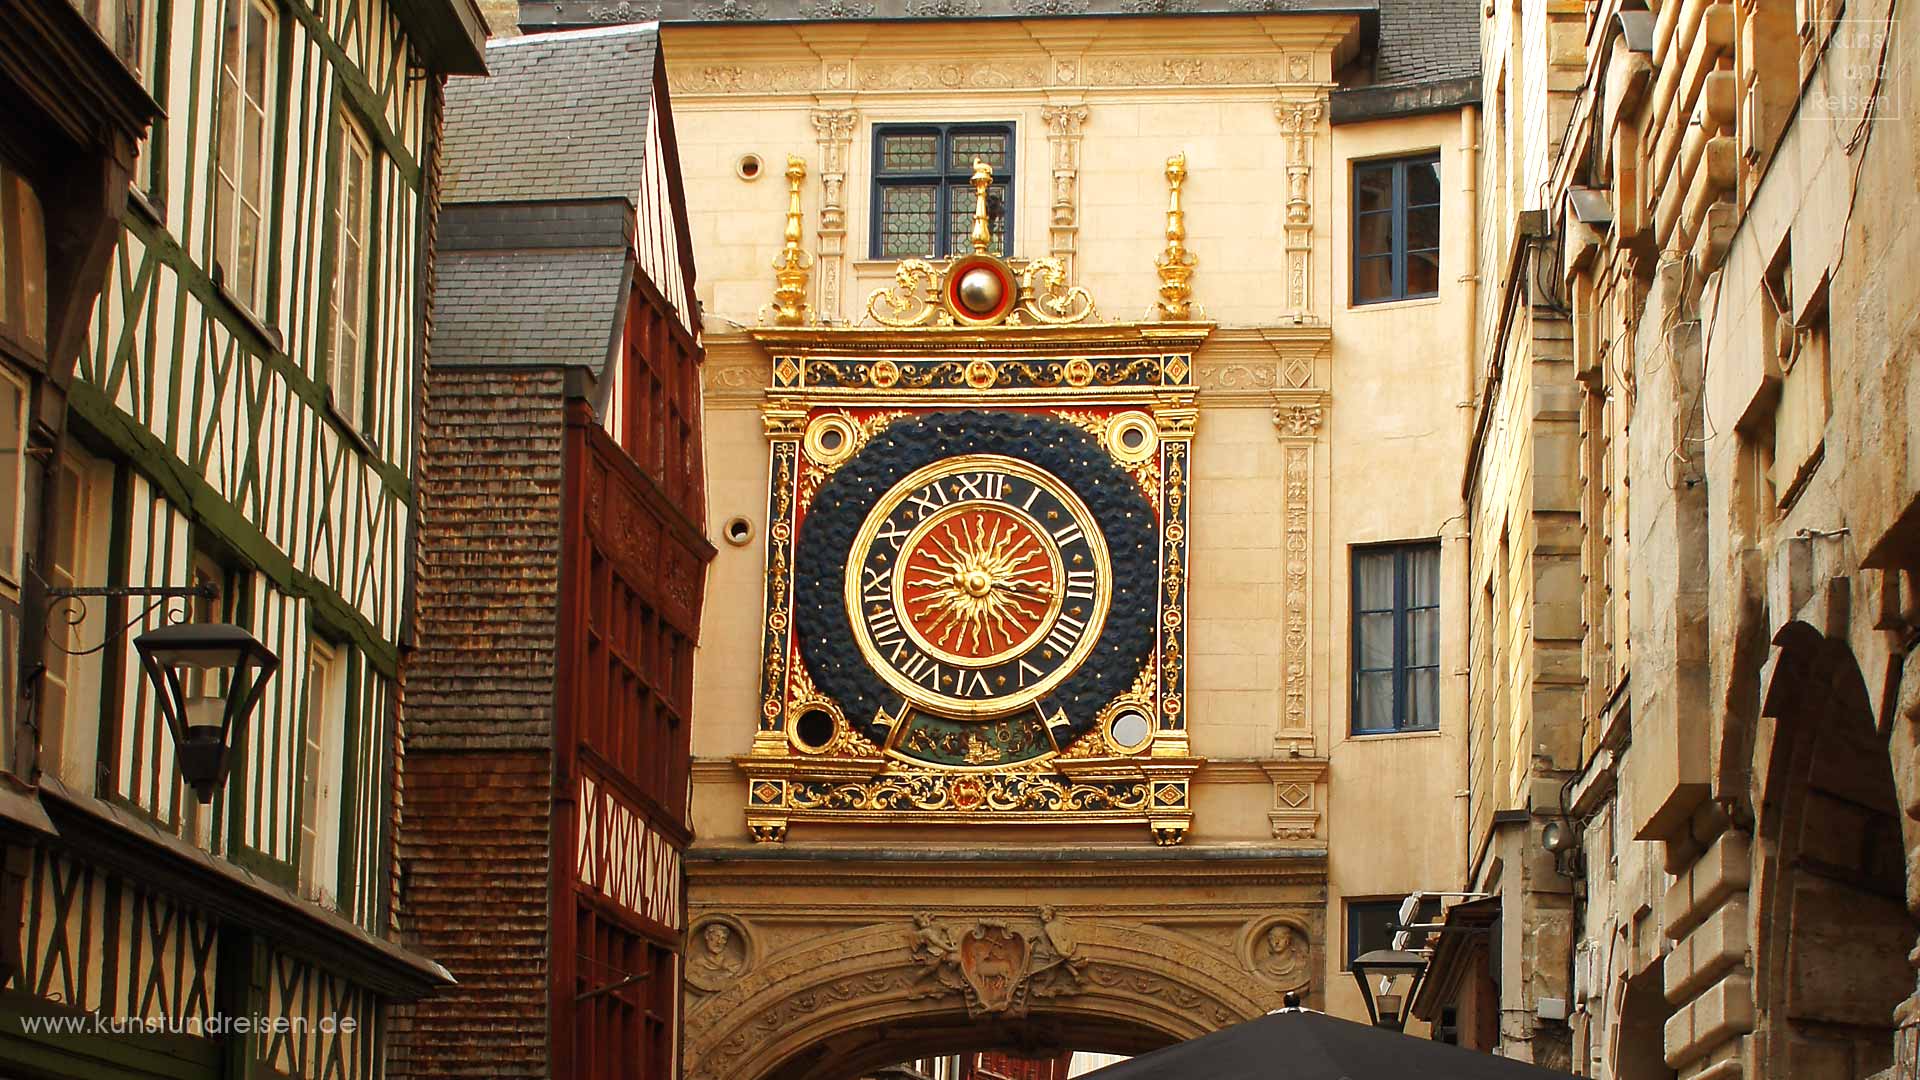 Le Gros-Horloge, große astronomische Uhr, Rouen